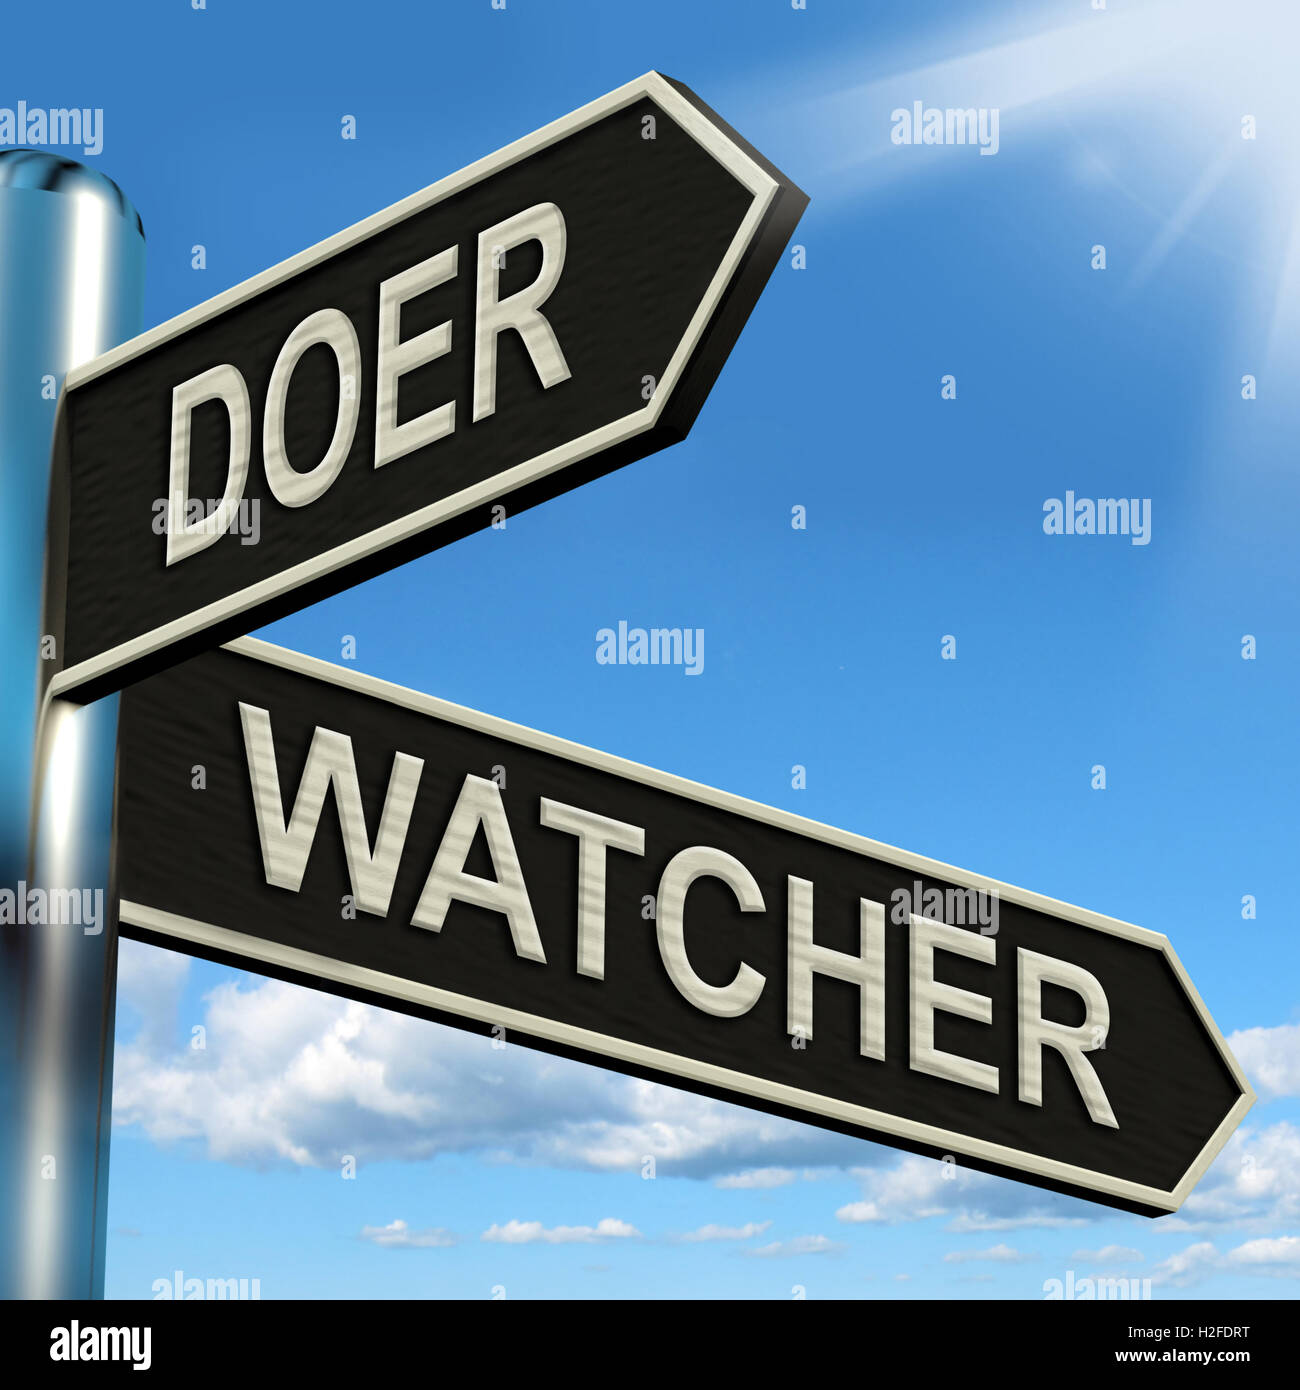 Doer Watcher observateur actif ou moyens d'orientation Banque D'Images